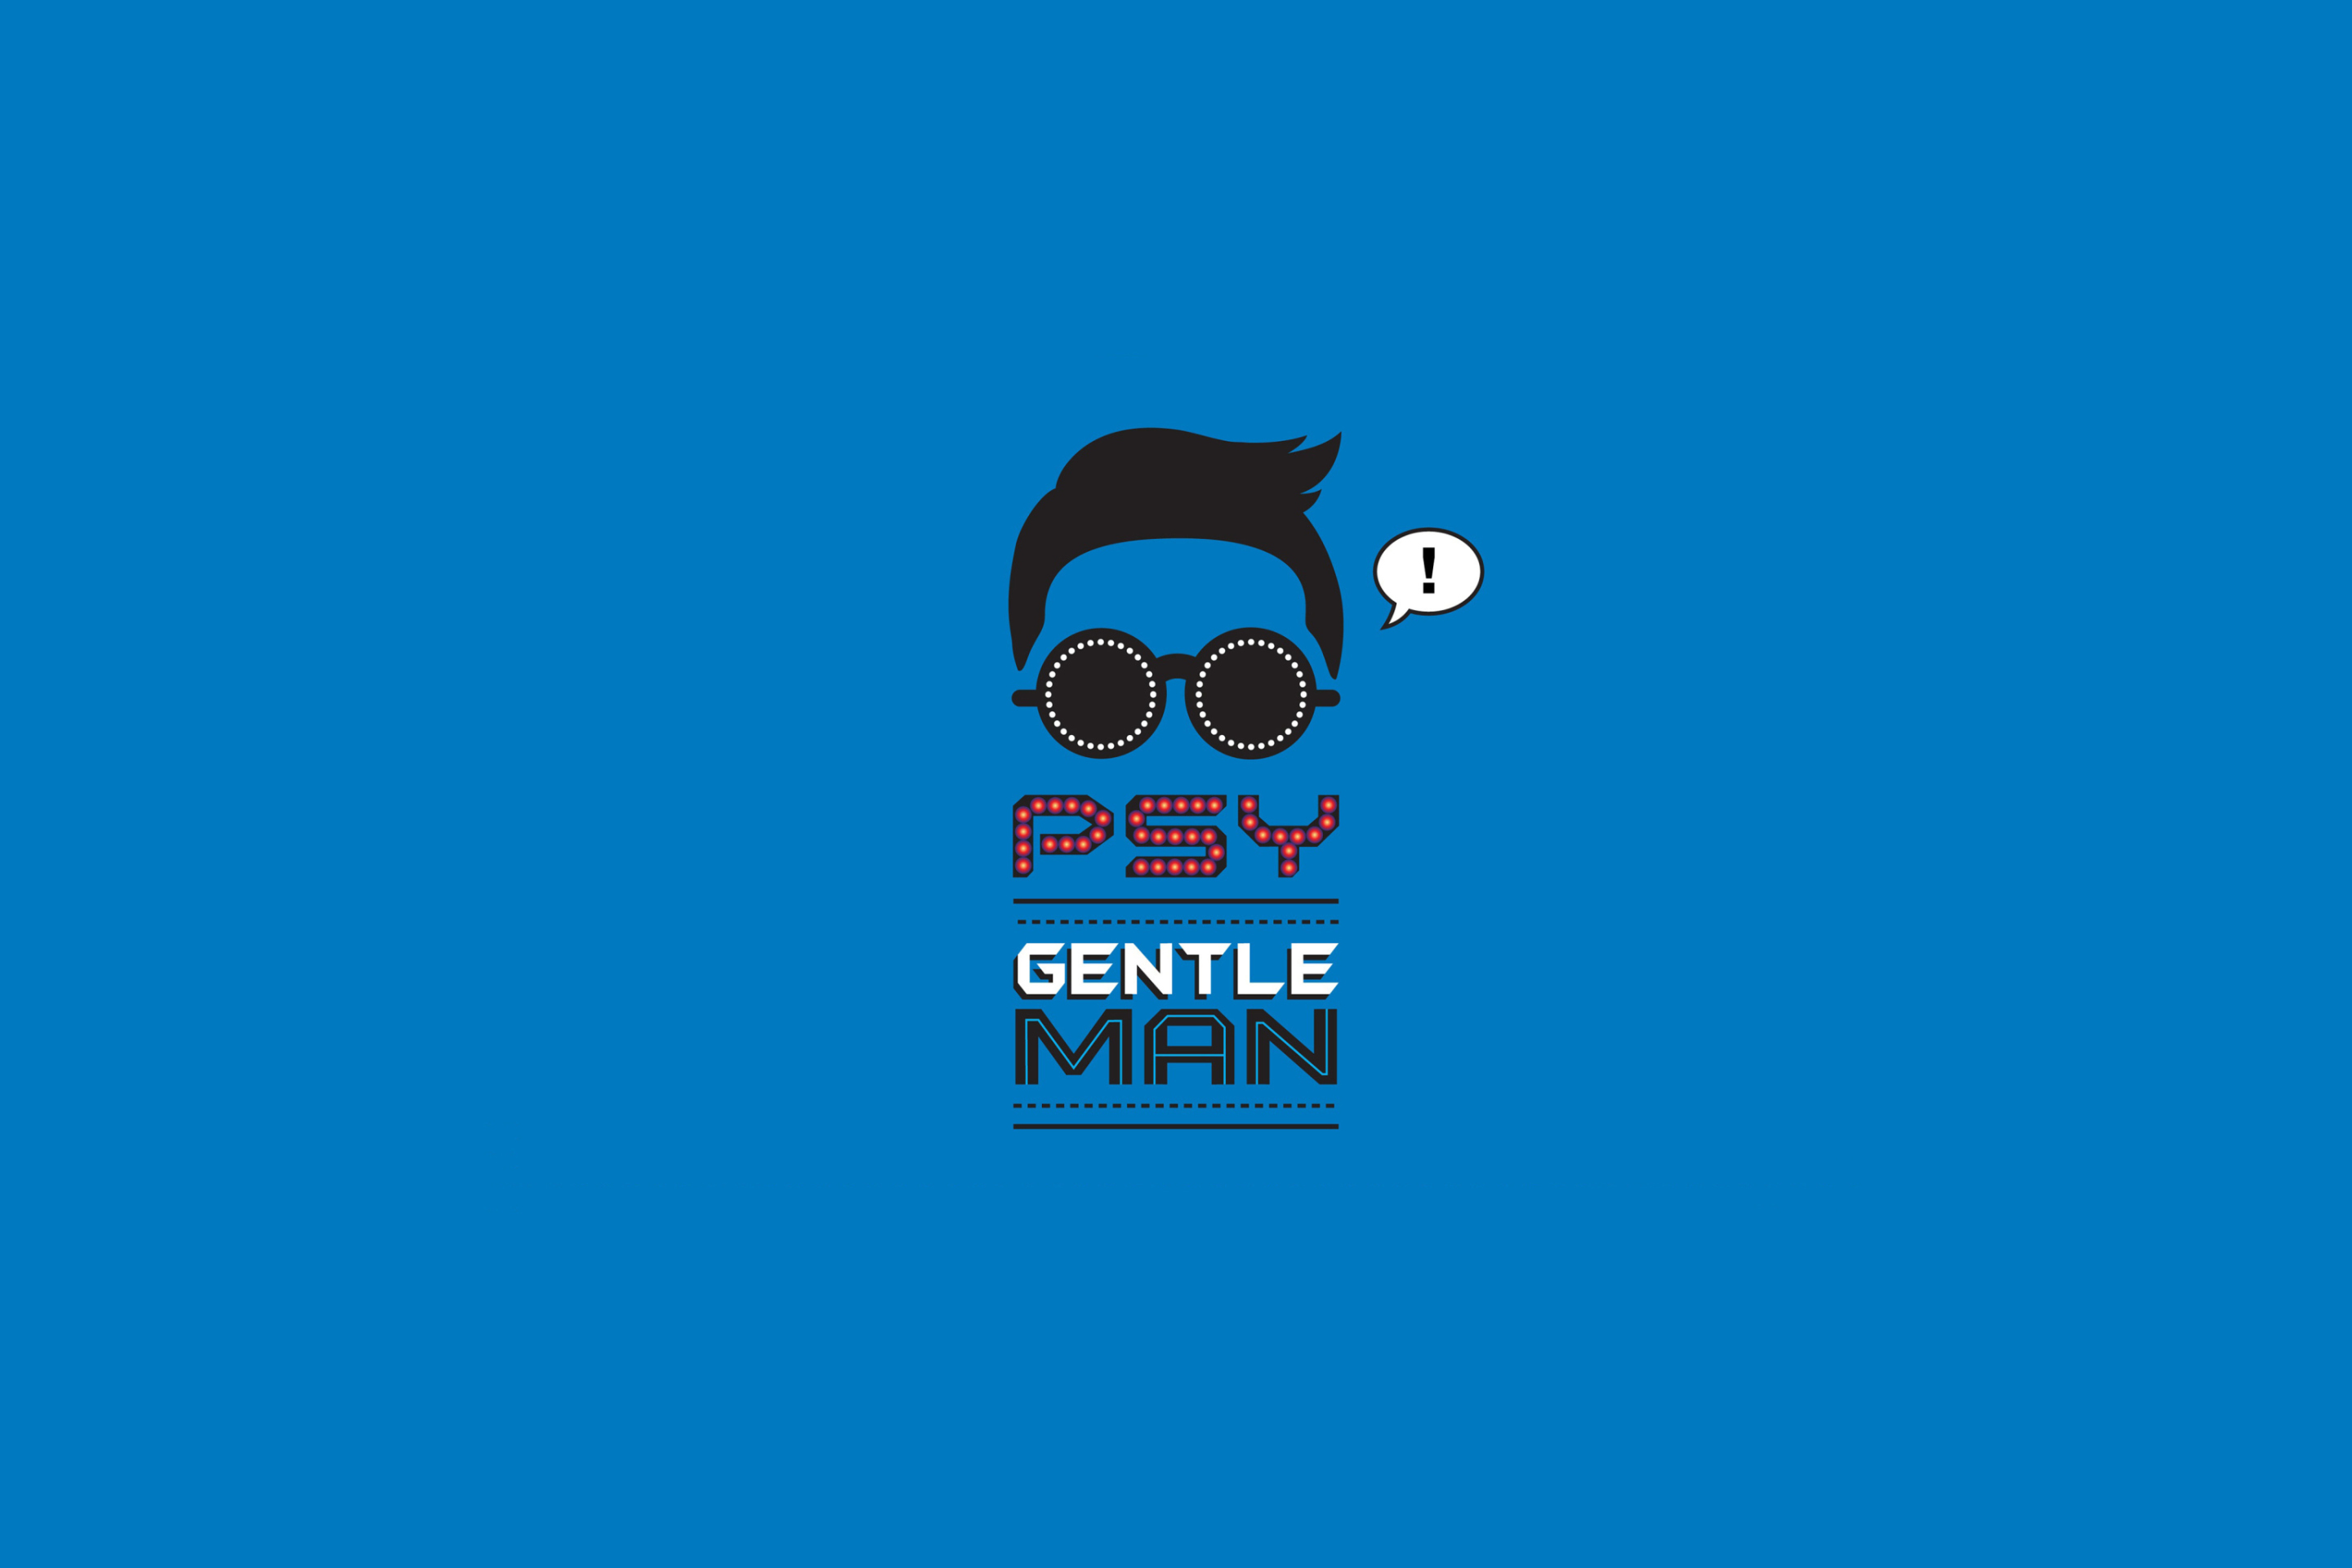 Psy - Gentleman wallpaper 2880x1920